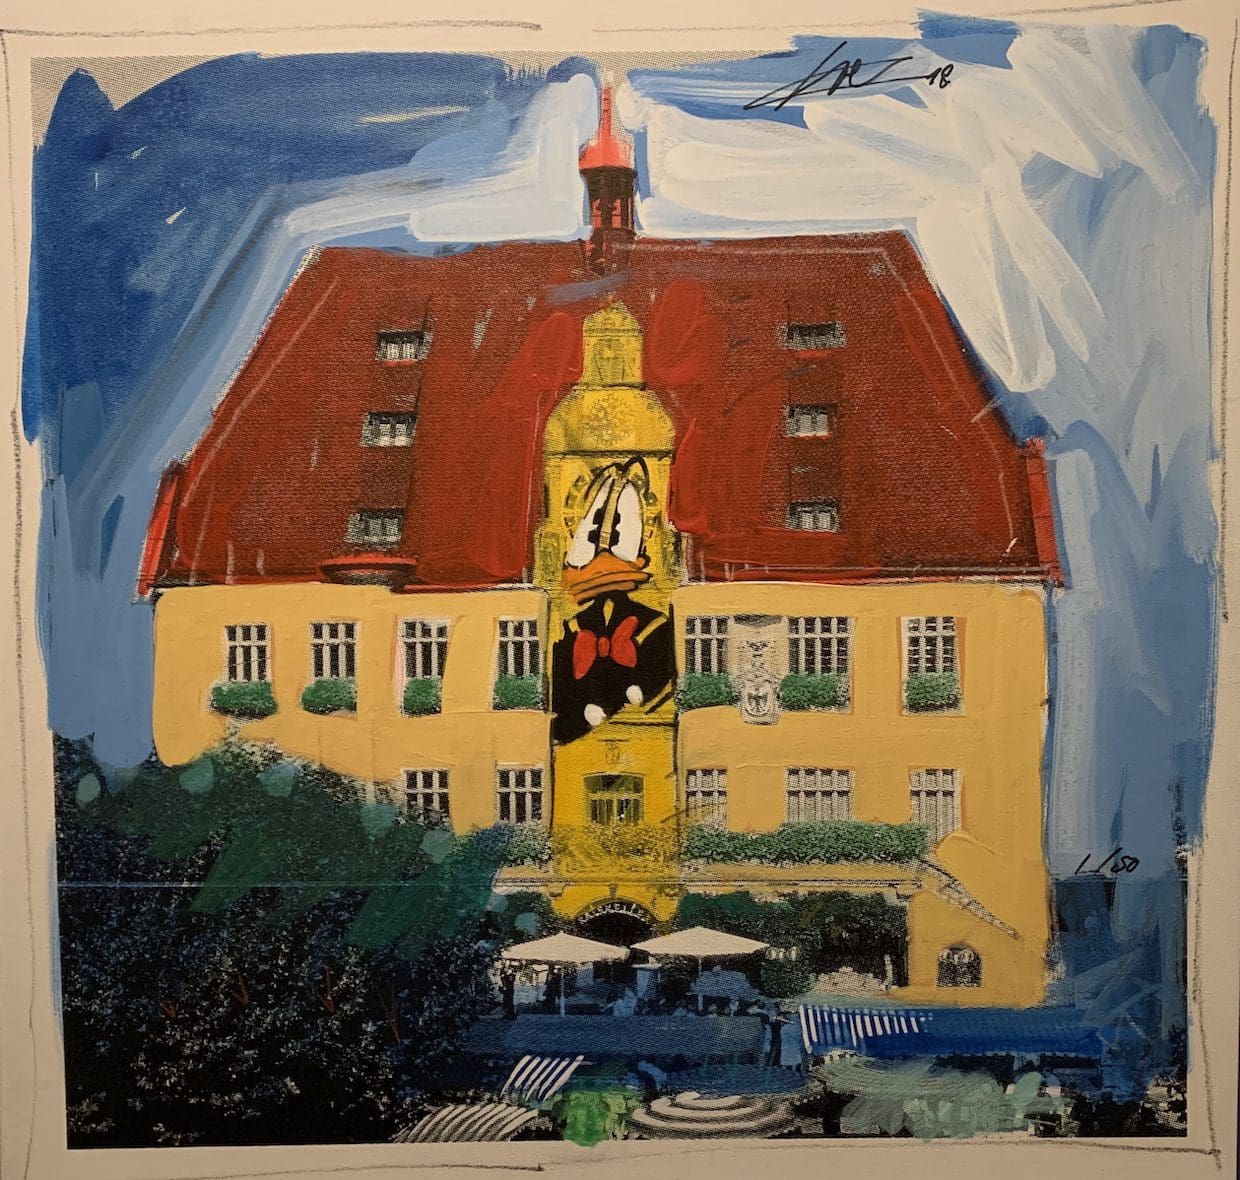 Heilbronn rådhus i akryl af Wolfgang Loesche